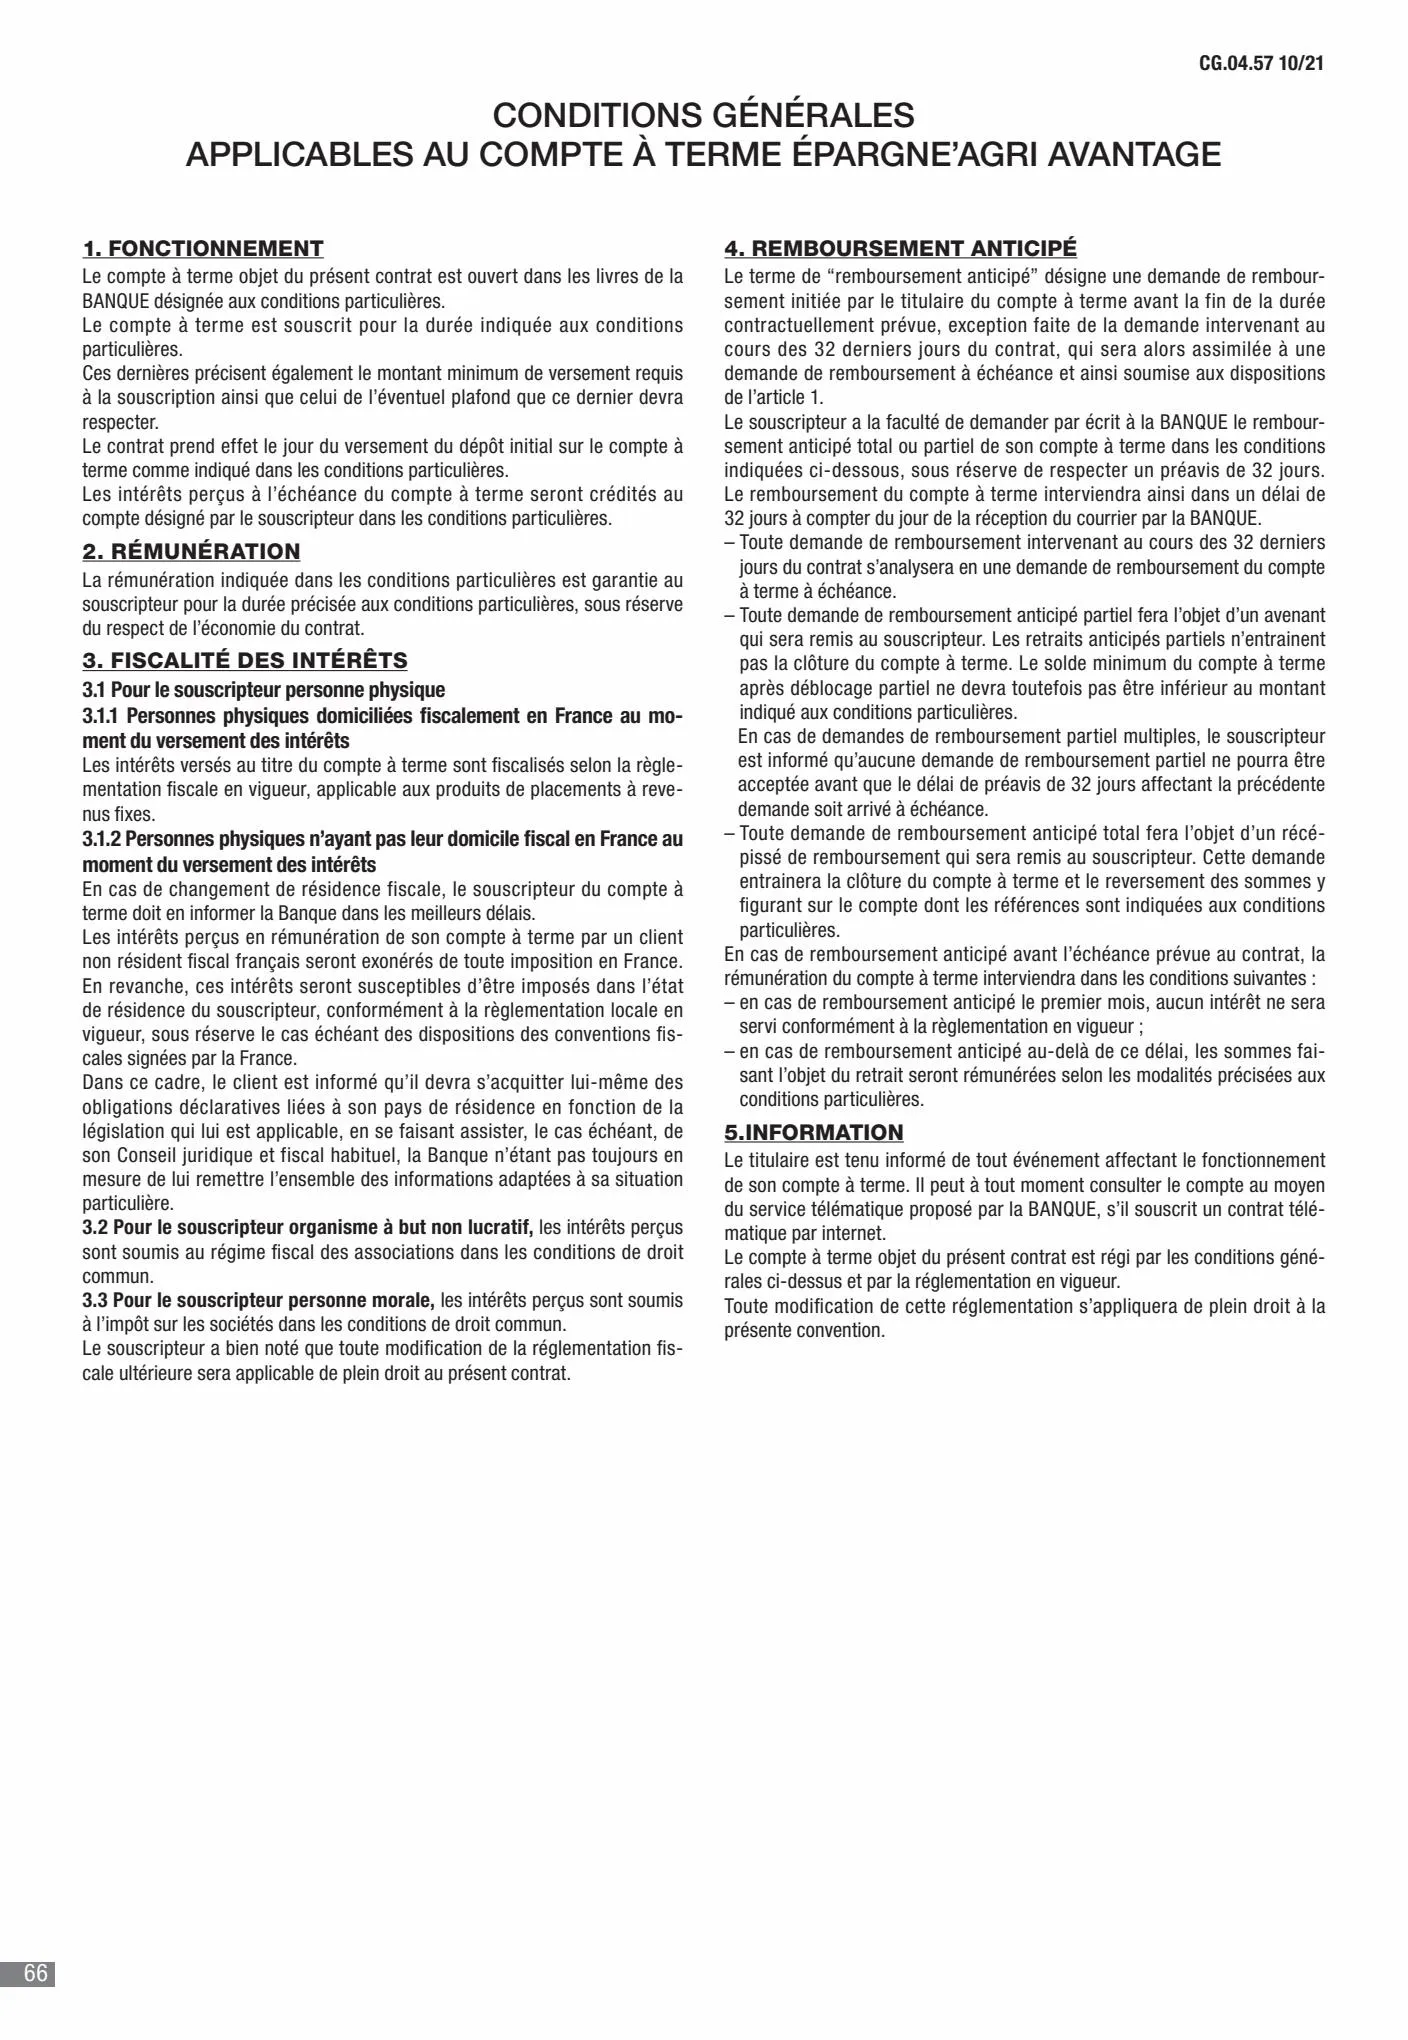 Catalogue CIC Conditions générales Professionels, page 00068